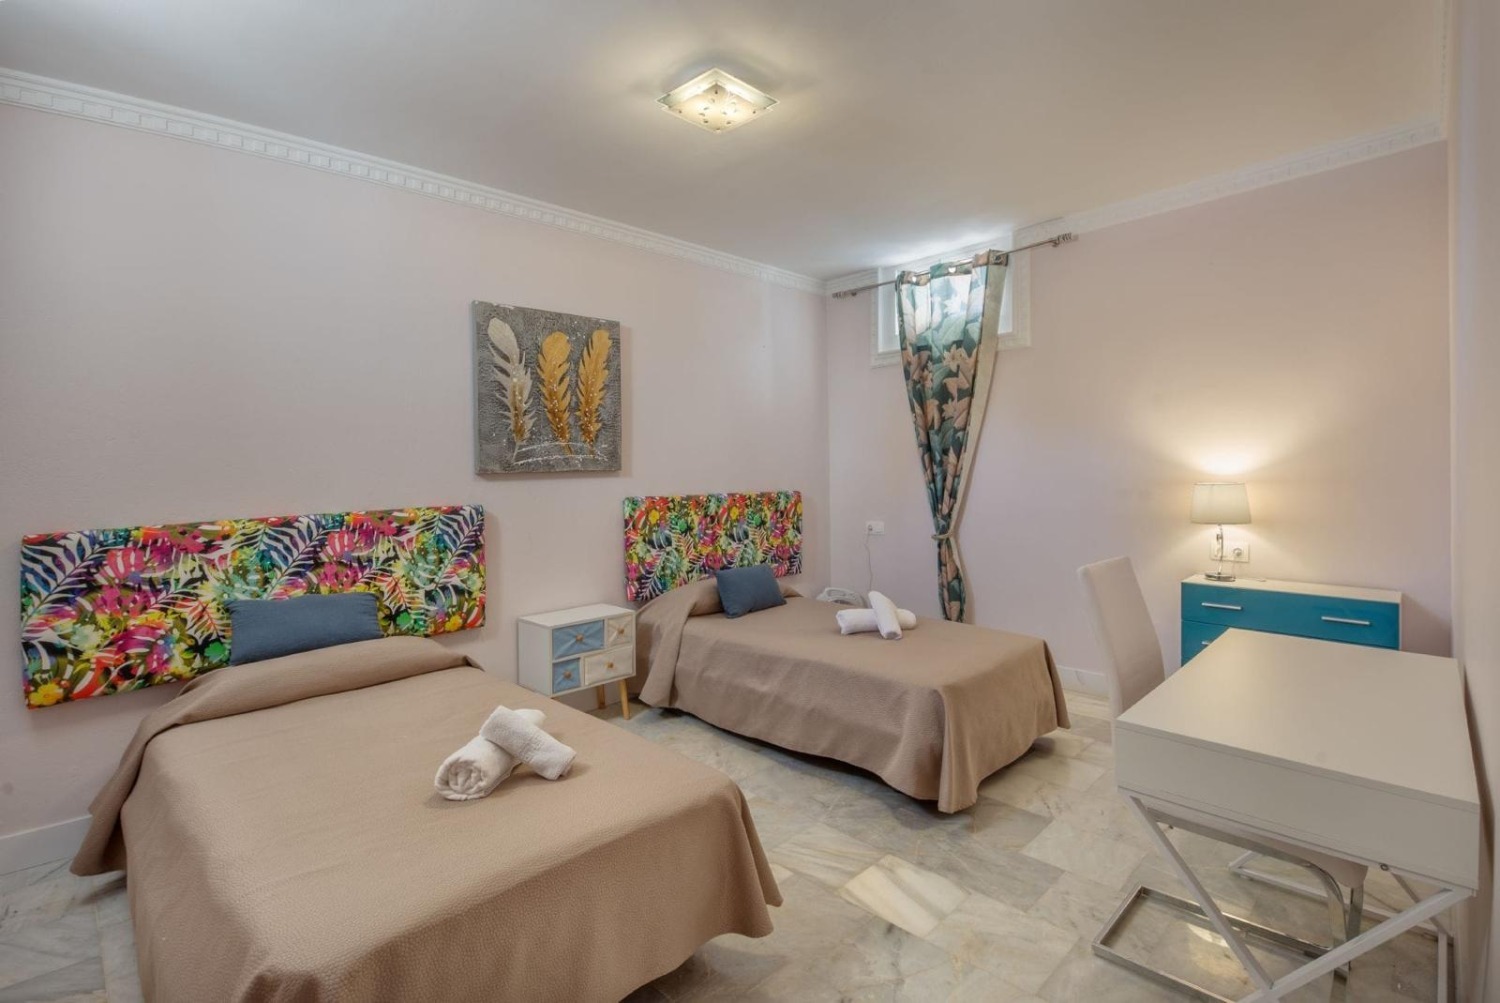 9 camere da letto matrimoniali - 7 bagni - posti letto fino a 20 persone - Marbella East